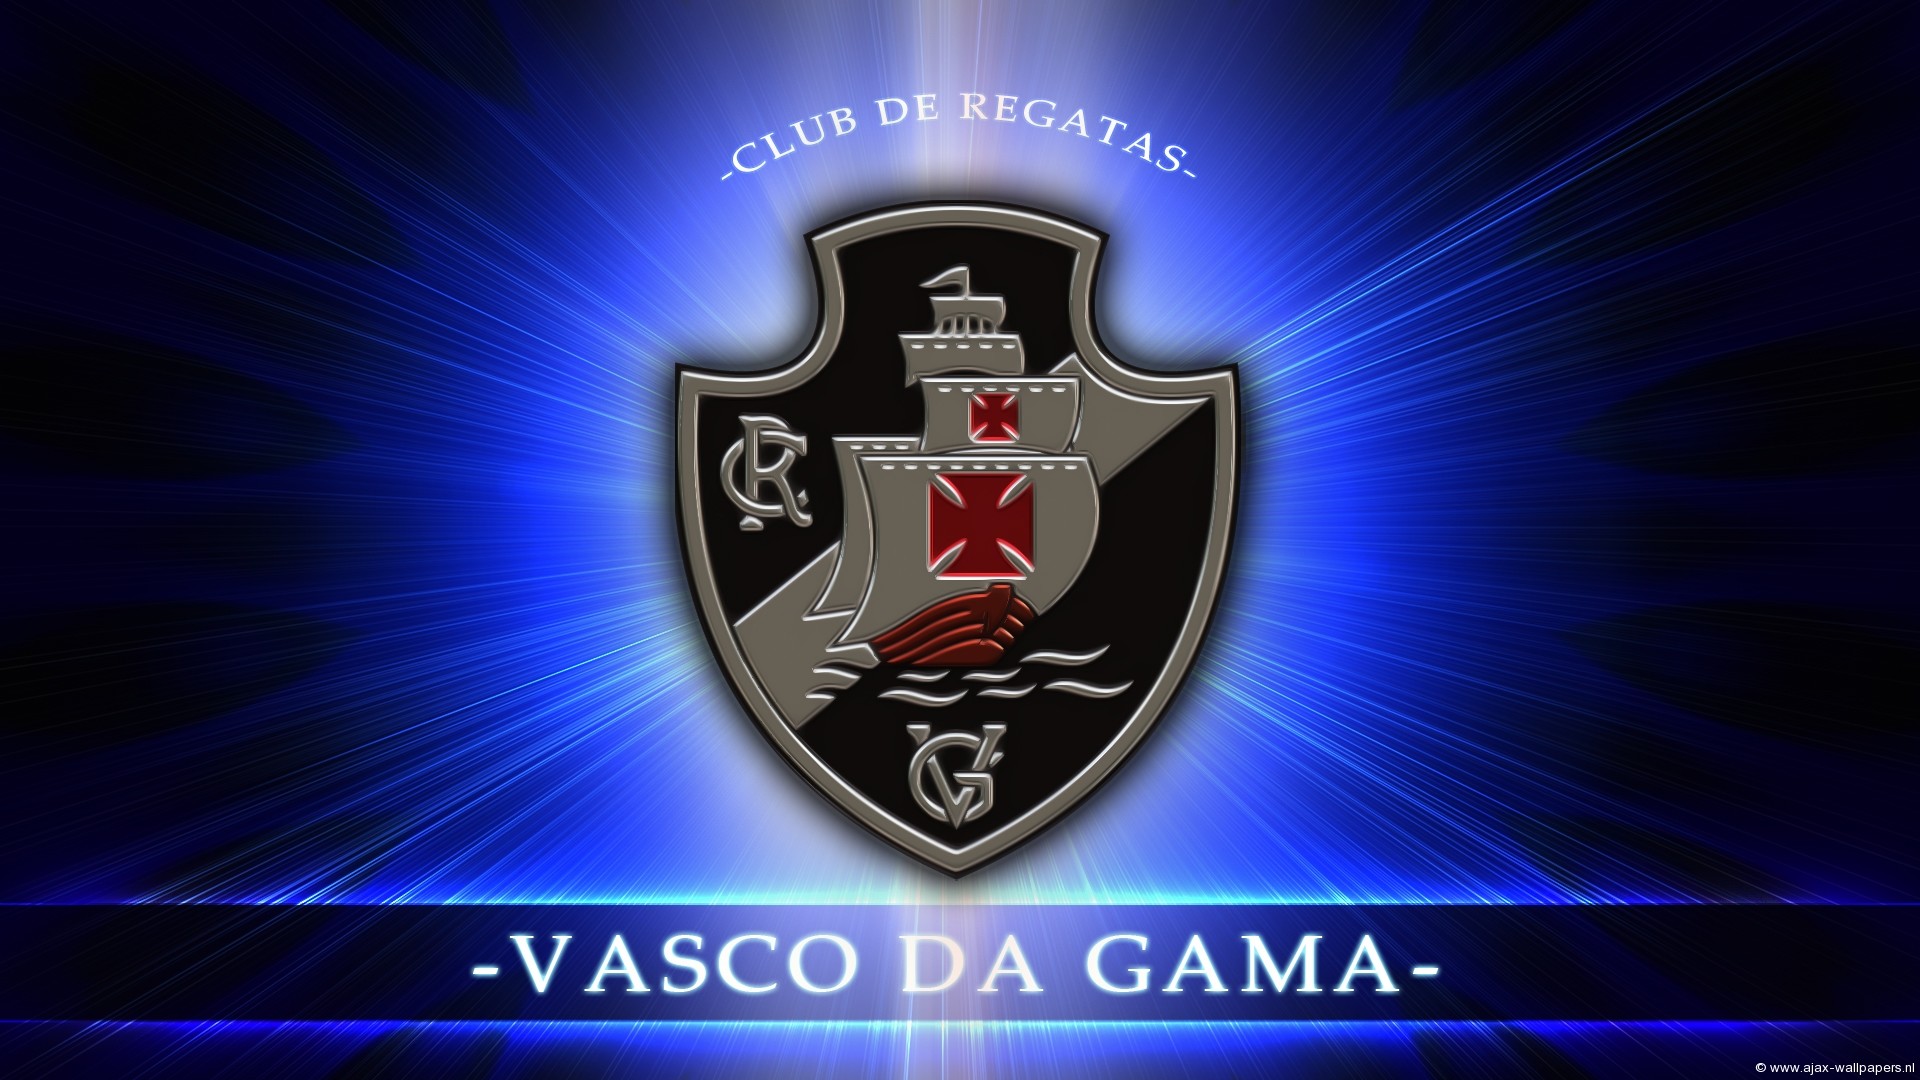 Sep 100 Anos De Historia By Panico747 - Vasco Da Gama , HD Wallpaper & Backgrounds